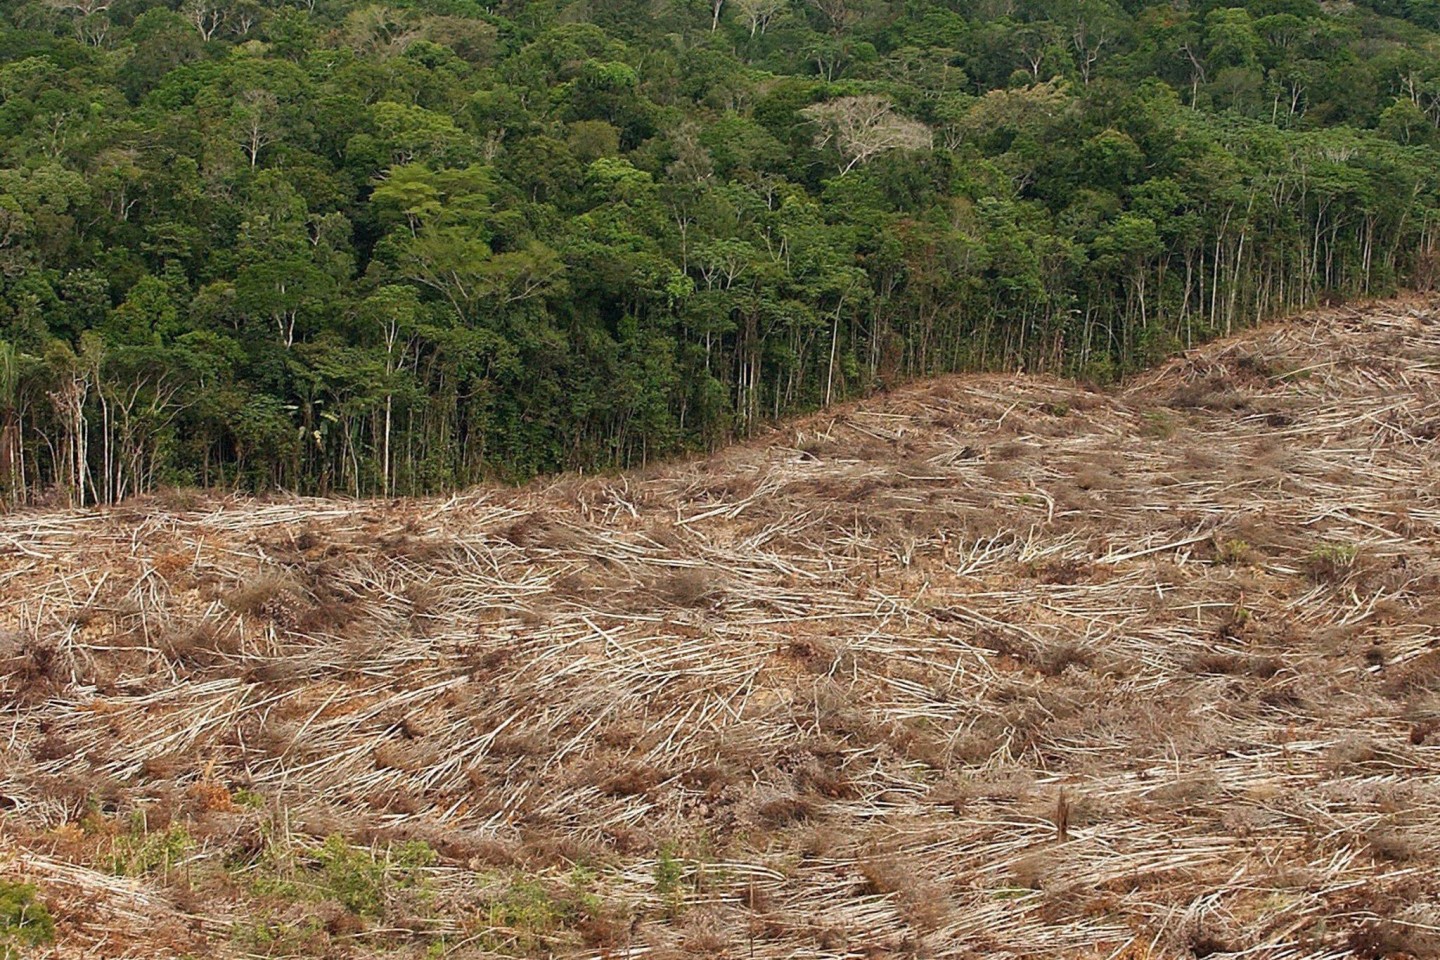 Abholzung des Regenwalds im Amazonasgebiet in Brasilien. Jeden Tag werden große Flächen Regenwald zerstört.